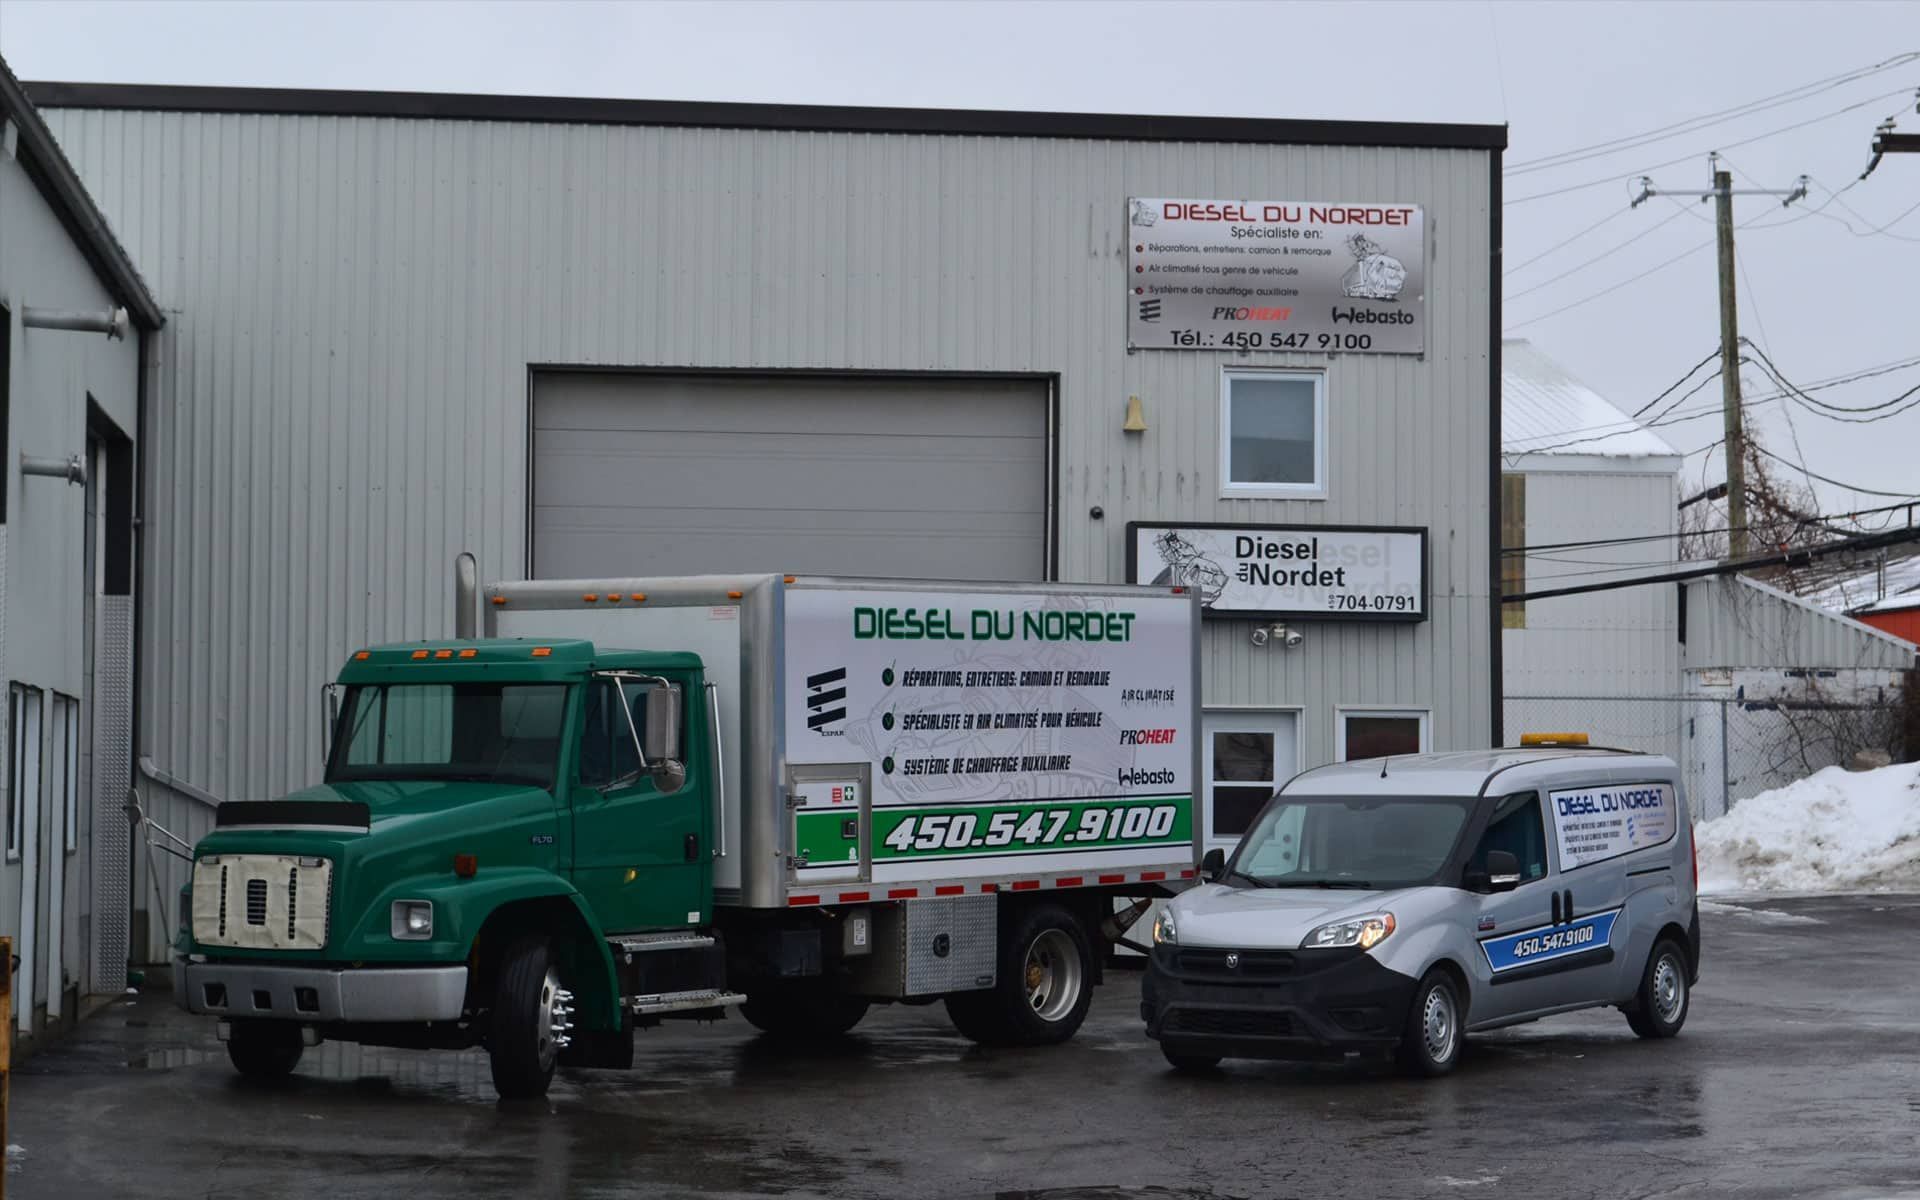 Un camion vert et une camionnette blanche sont garés devant un immeuble